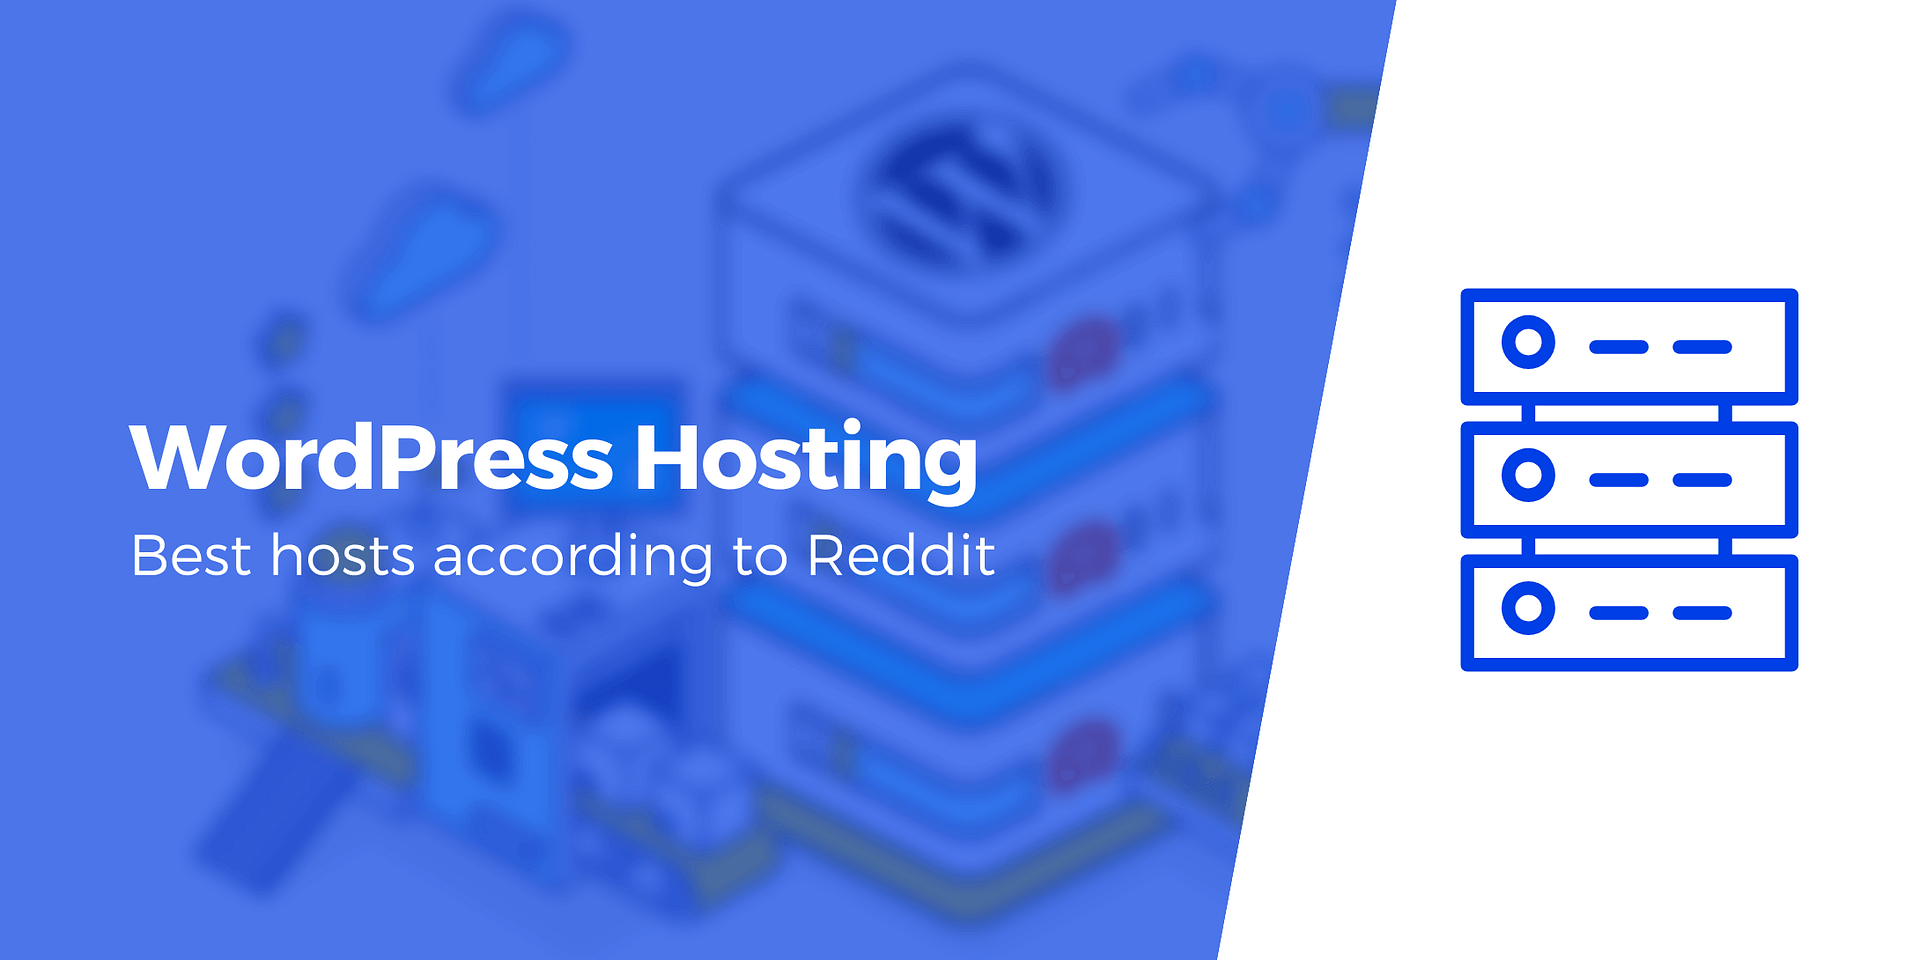 WordPress Hosting: Reddit's Top 3 by Opinions